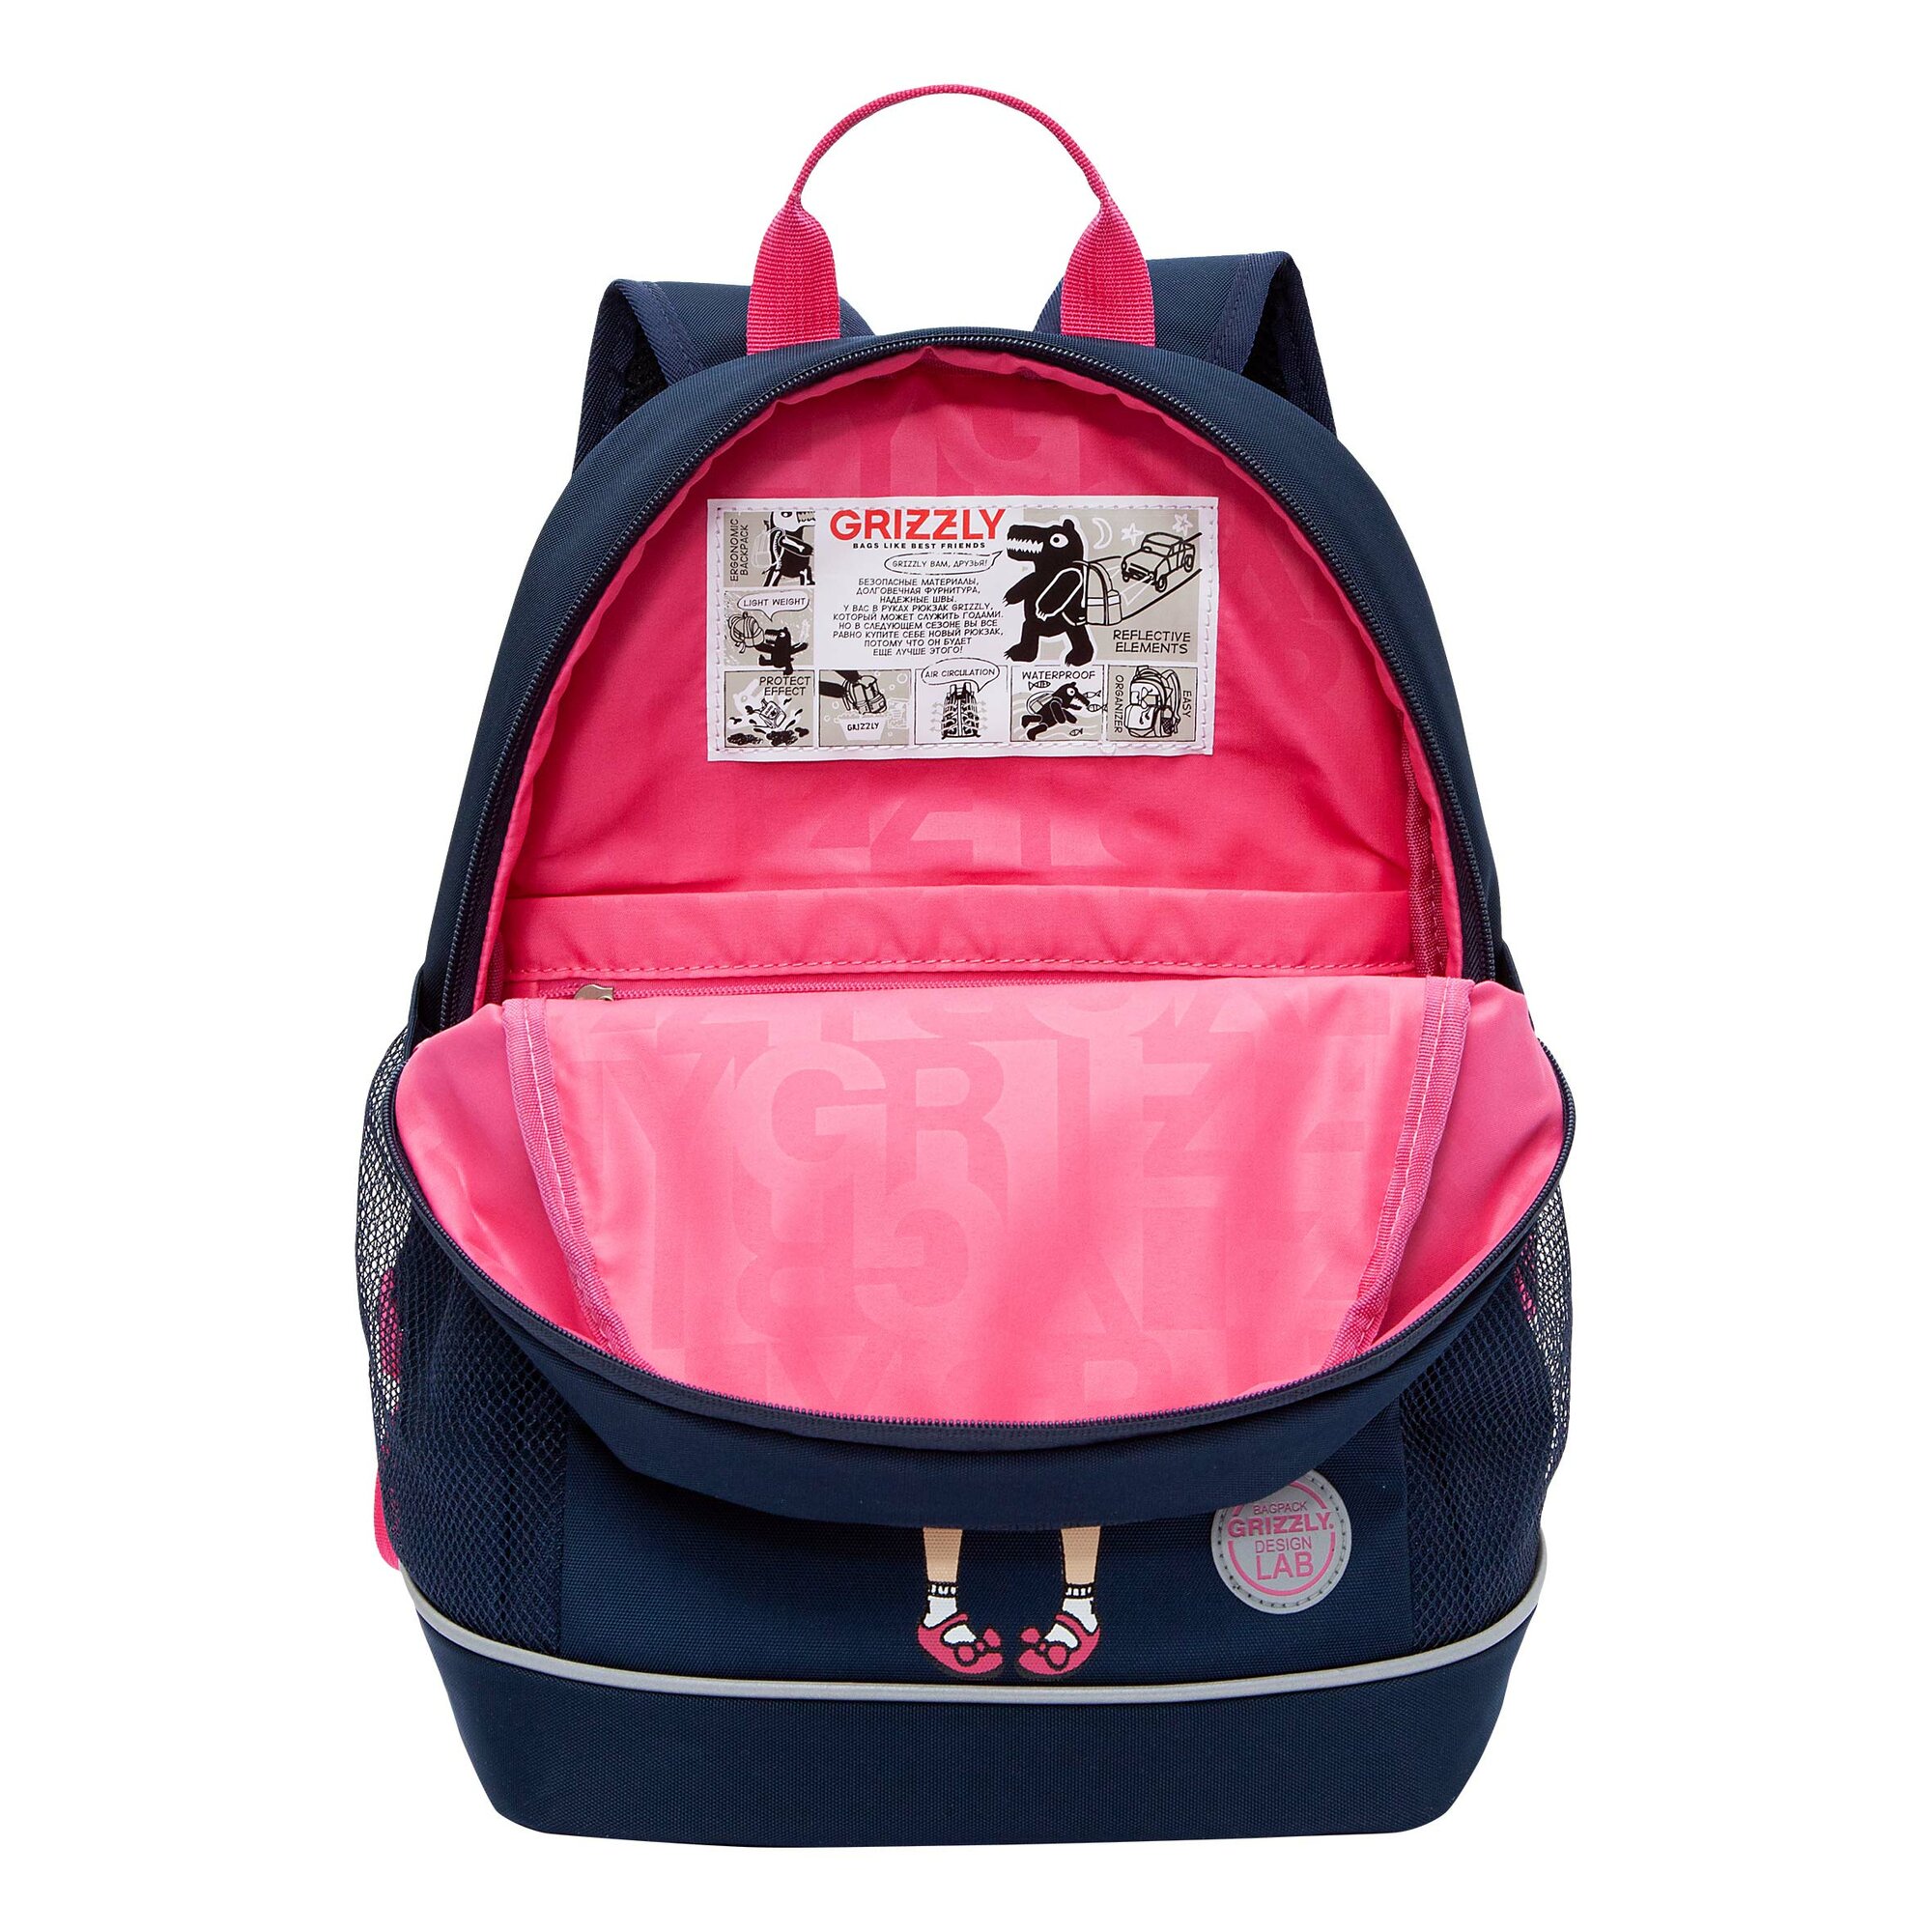 Рюкзак школьный GRIZZLY с карманом для ноутбука 13", жесткой спинкой, двумя отделениями, для девочки RG-363-9/1